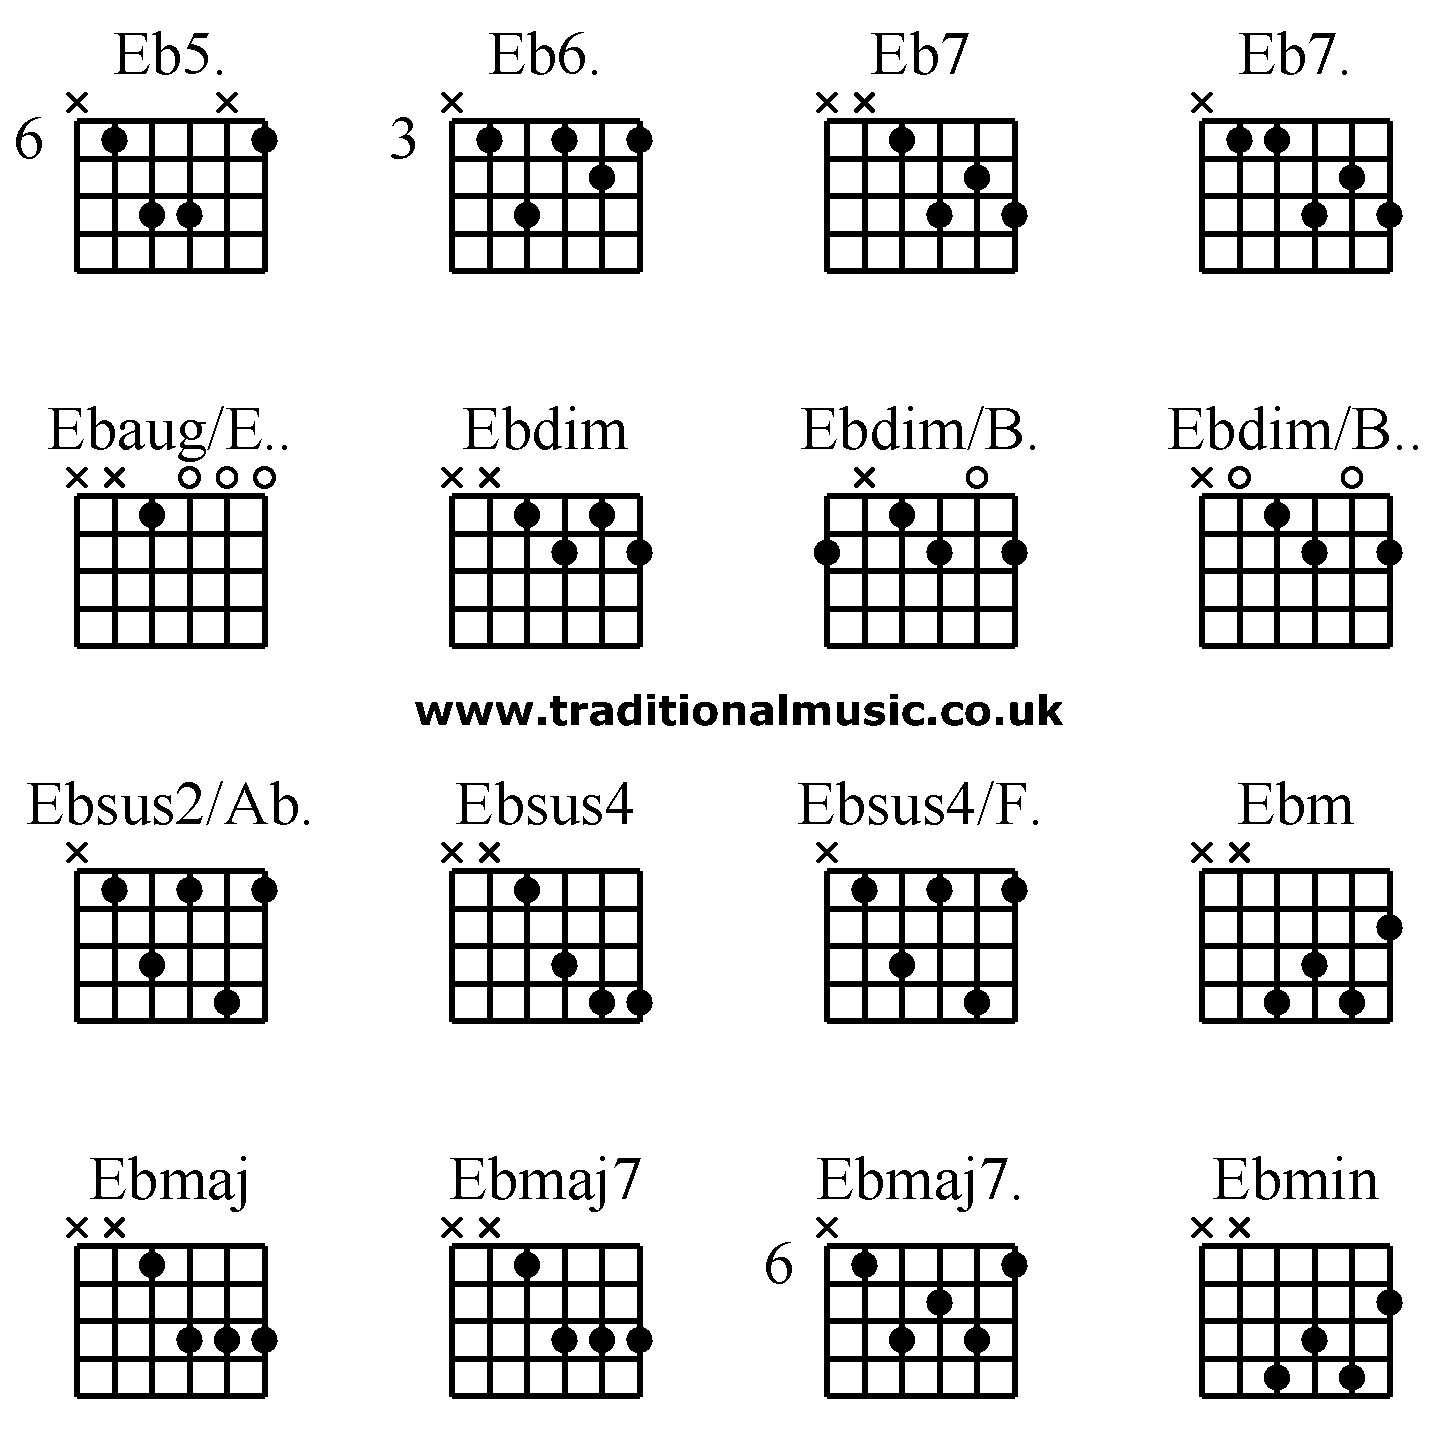 Advanced guitar chords:Eb5. Eb6. Eb7 Eb7. Ebaug/E.. Ebdim Ebdim/B. Ebdim/B.. Ebsus2/Ab. Ebsus4 Ebsus4/F. Ebm Ebmaj Ebmaj7 Ebmaj7. Ebmin